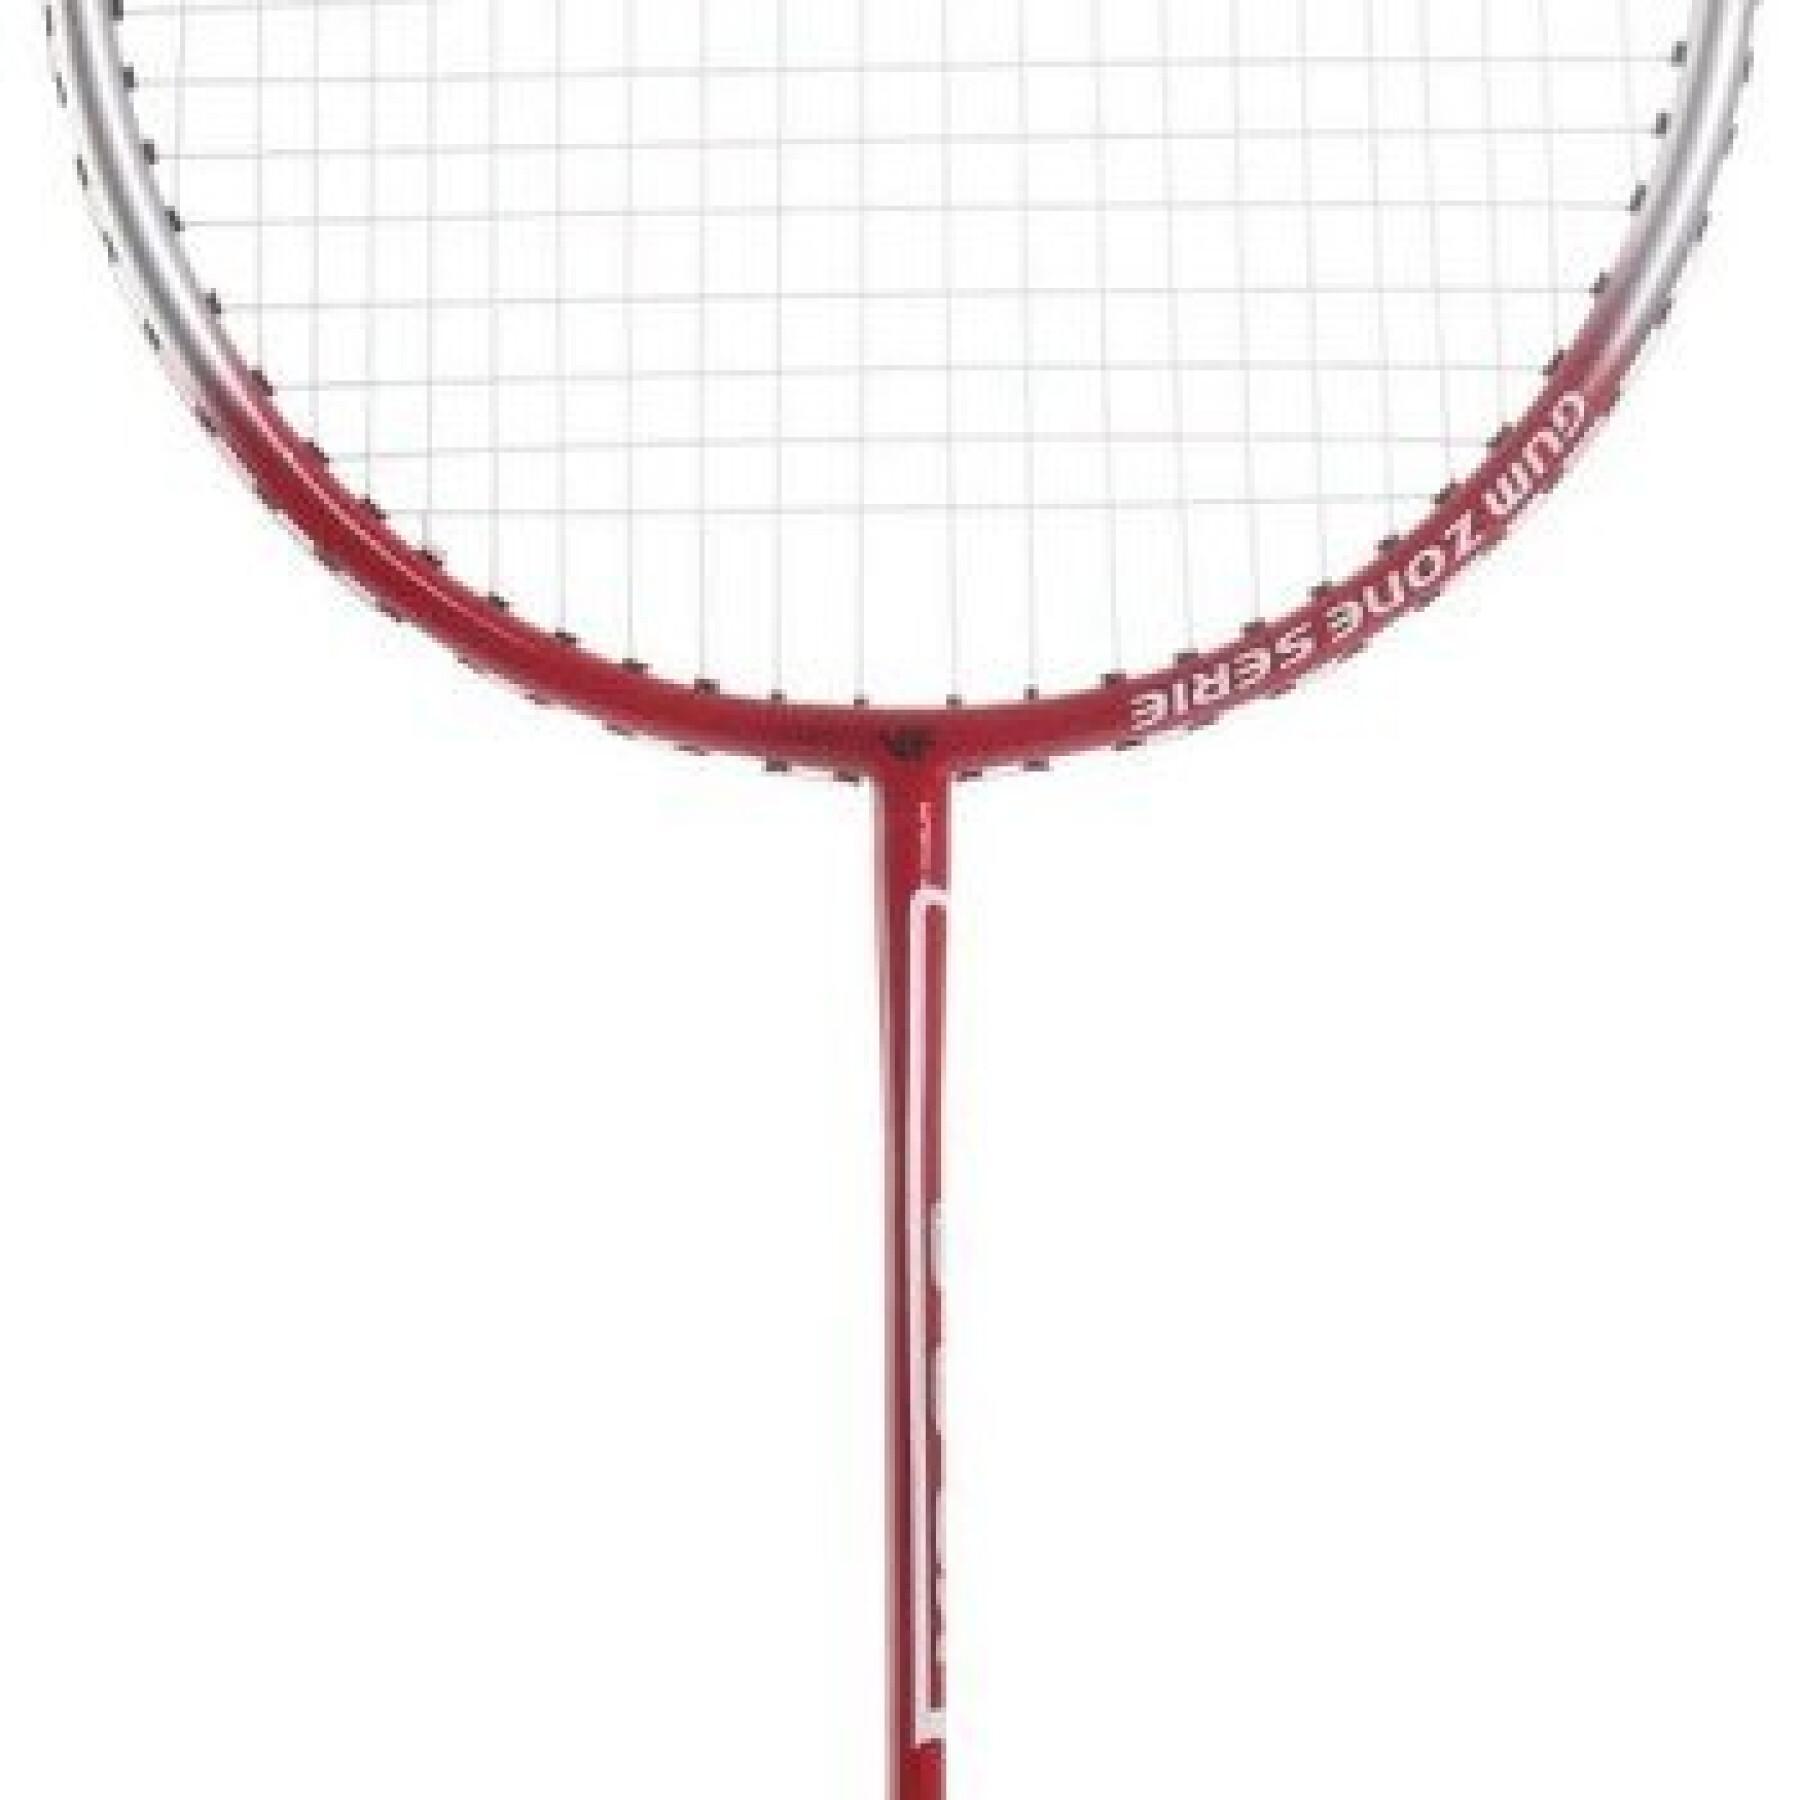 Victor badminton racket Vicfun Xa 3.3